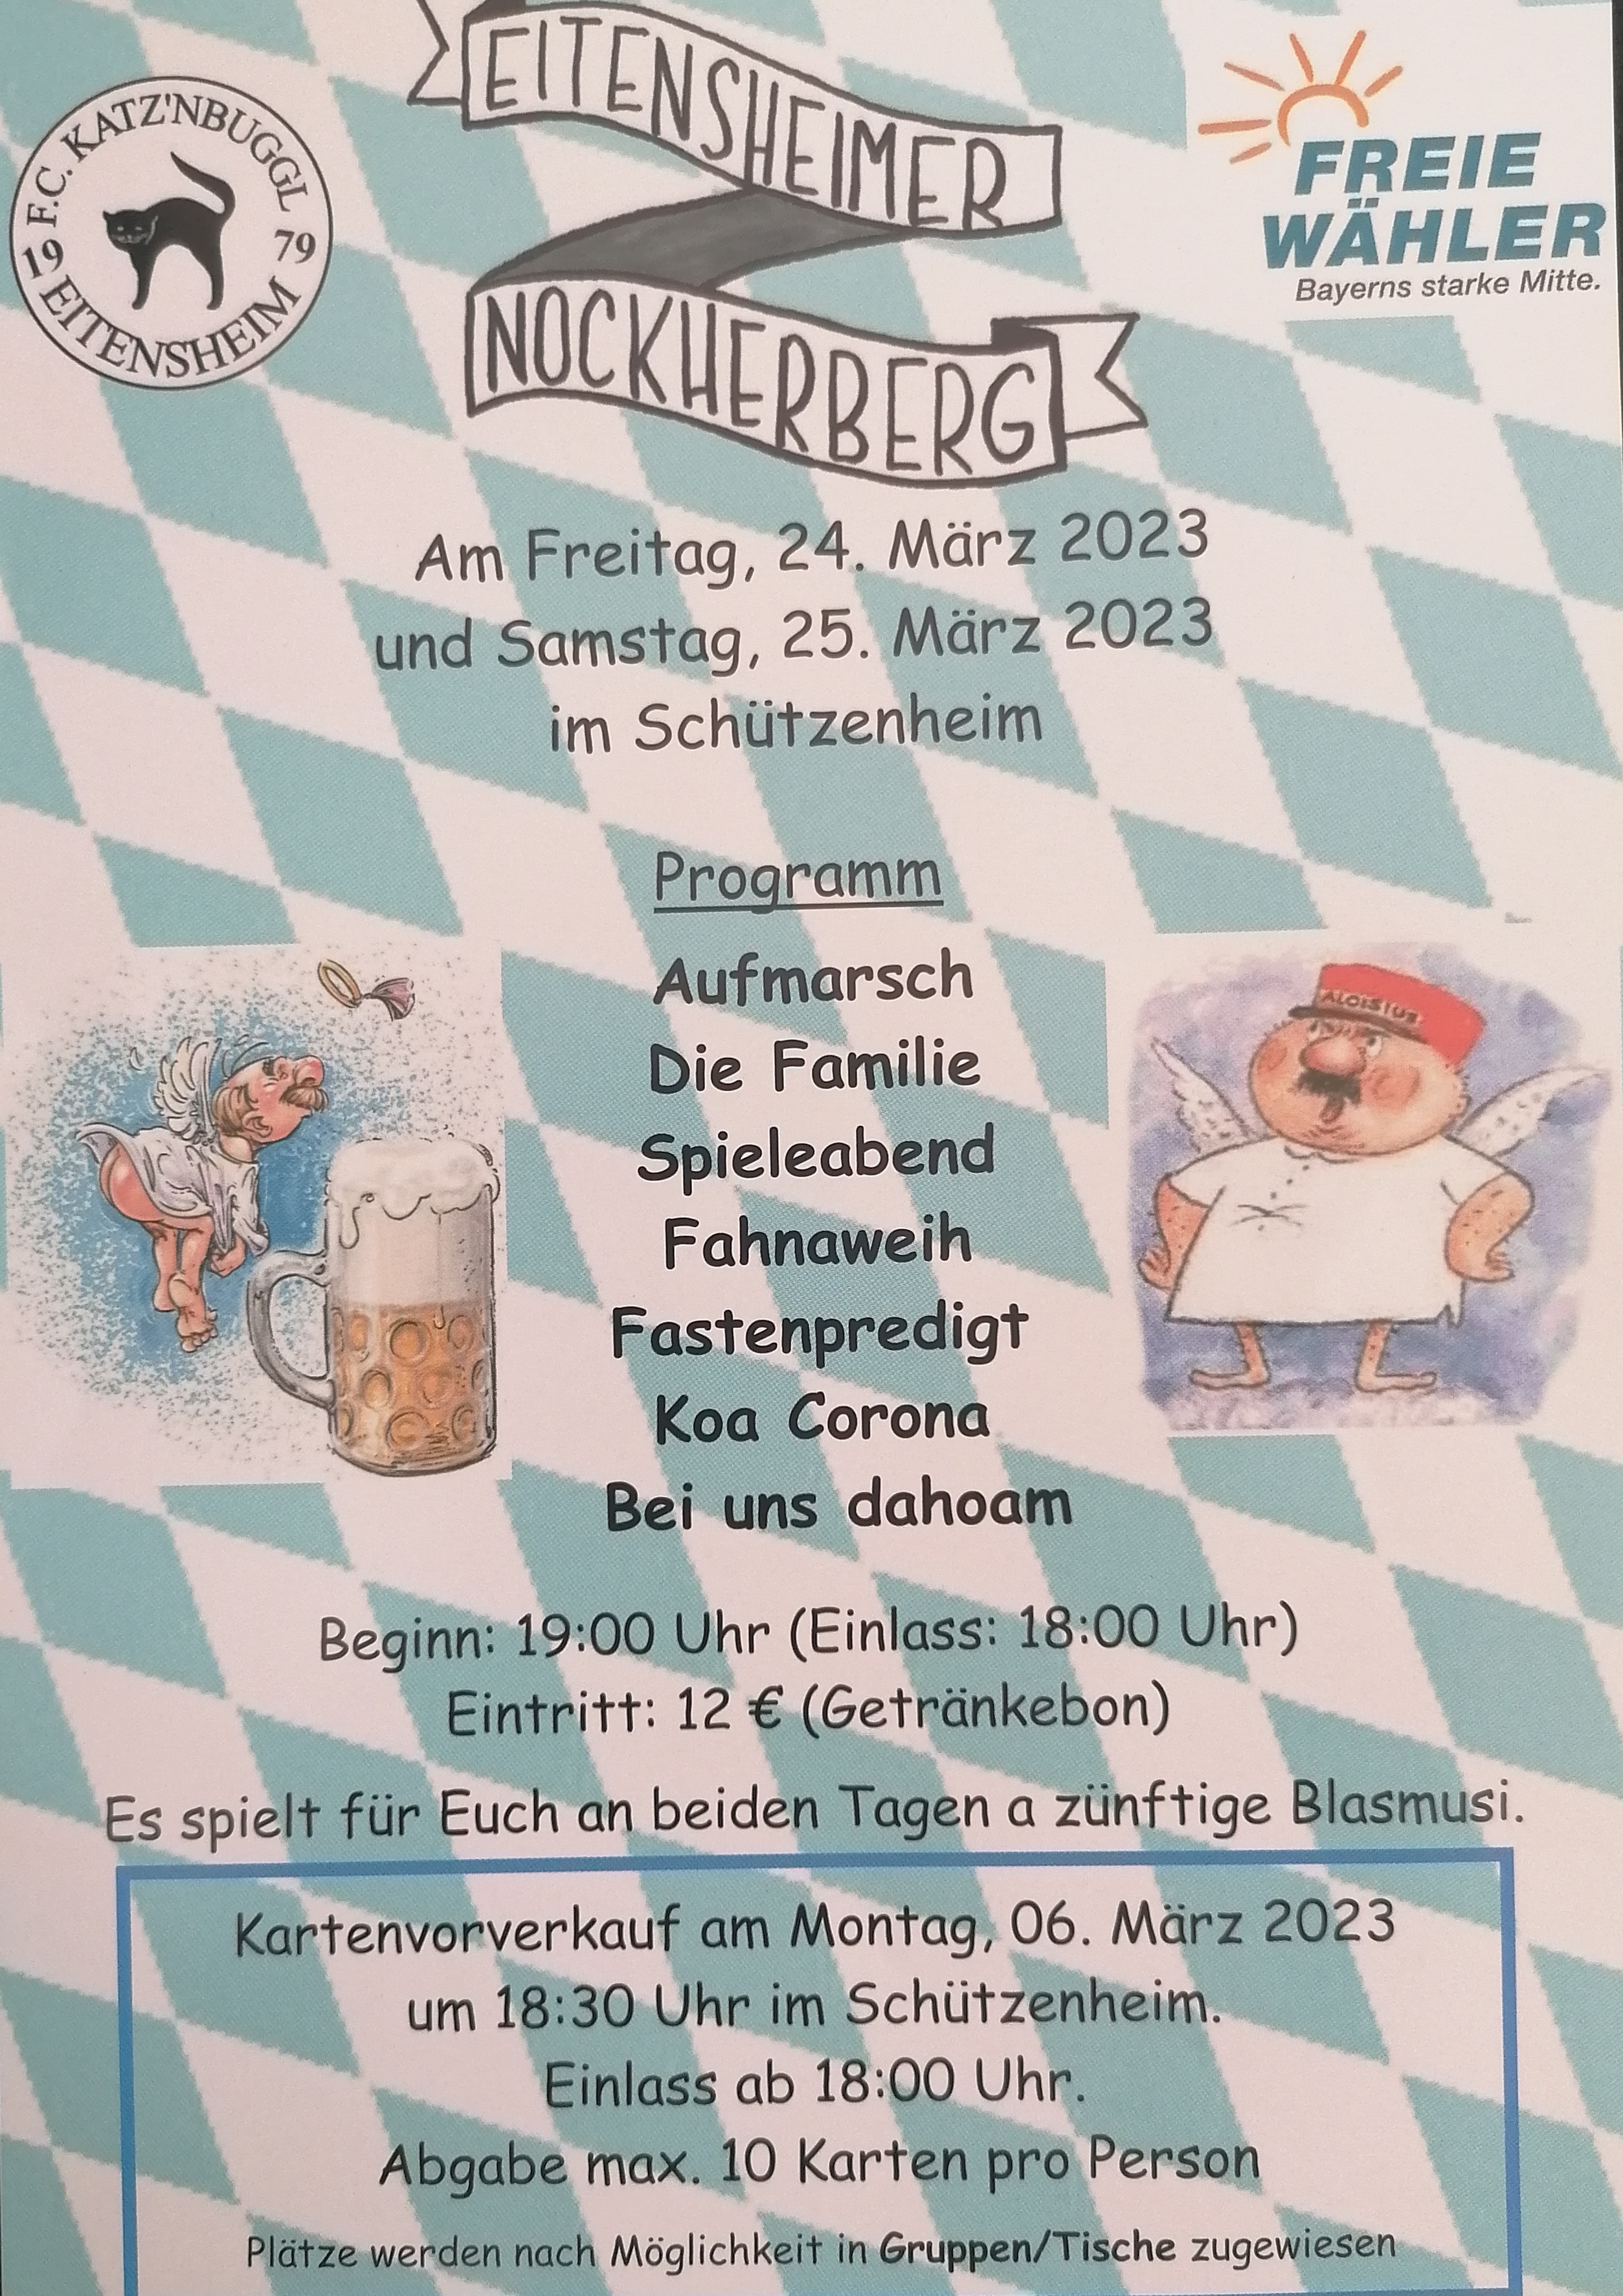 Starkbierfest - Eitensheimer Nockherberg am 24. und 25. März 2023